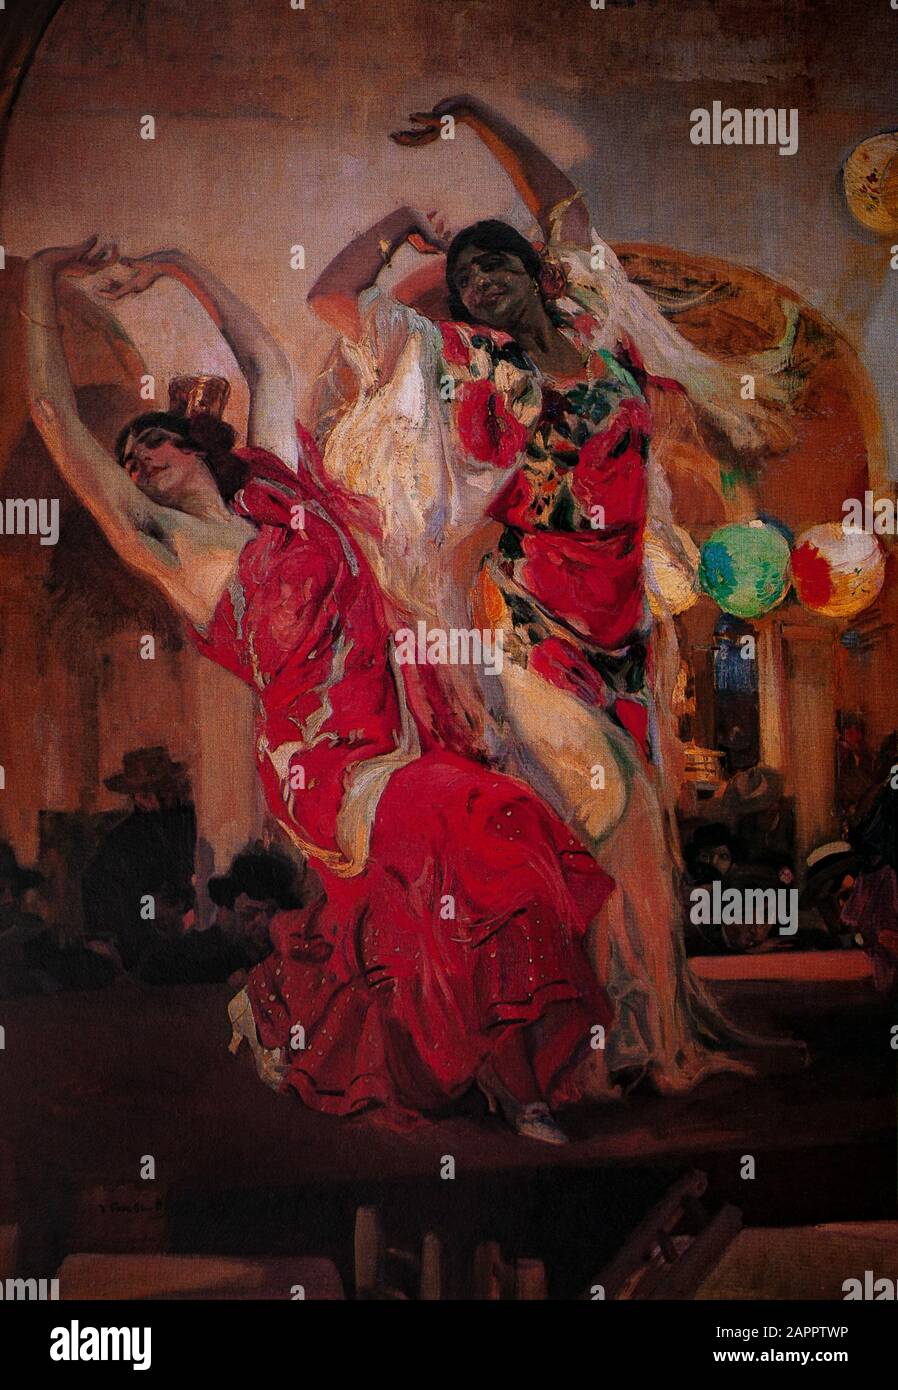 Danseurs de flamenco, une forme d'art basée sur les diverses traditions  folkloriques de musique du sud de l'Espagne dans la communauté autonome  d'Andalousie. Un détail de 'Baile en el Cafe, Novedades de